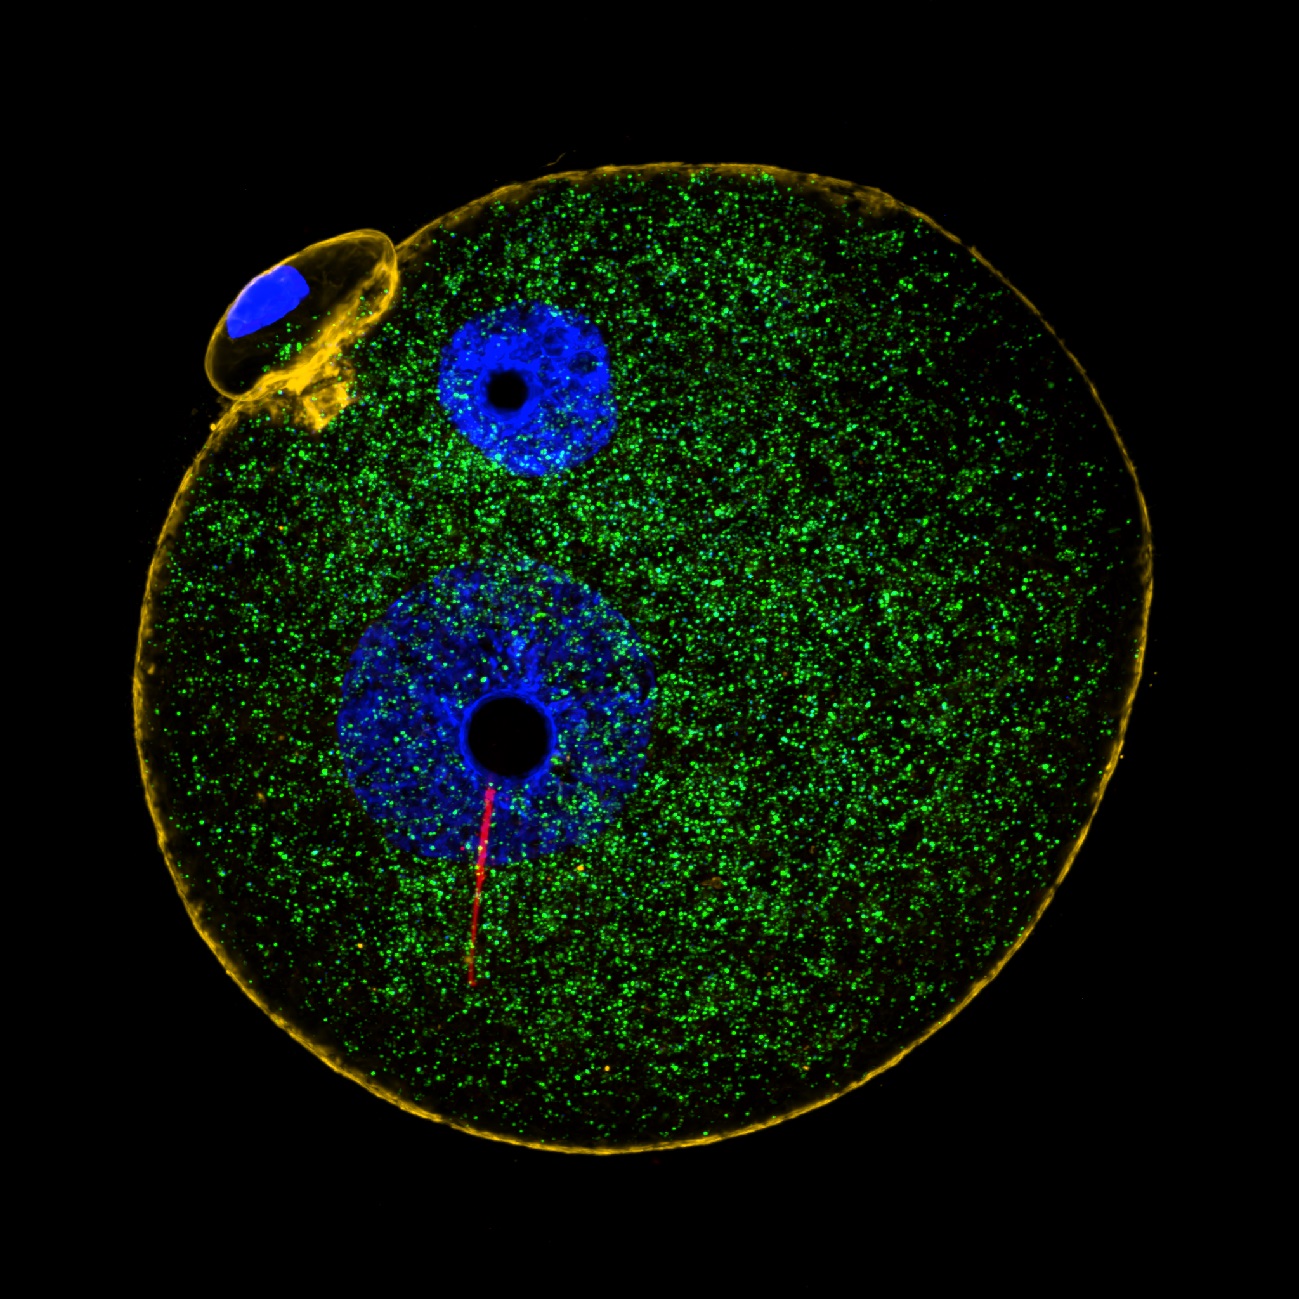 vajíčko krátce po oplození spermií. Jednobuněčné embryo zvané zygota (modře: prvojádra, oranžově: ?-aktin) obsahuje tisíce mateřských mitochondrií (zeleně) a jen několik desítek mitochondrií otcovských (červeně). Otcovské mitochondrie přichází se spe